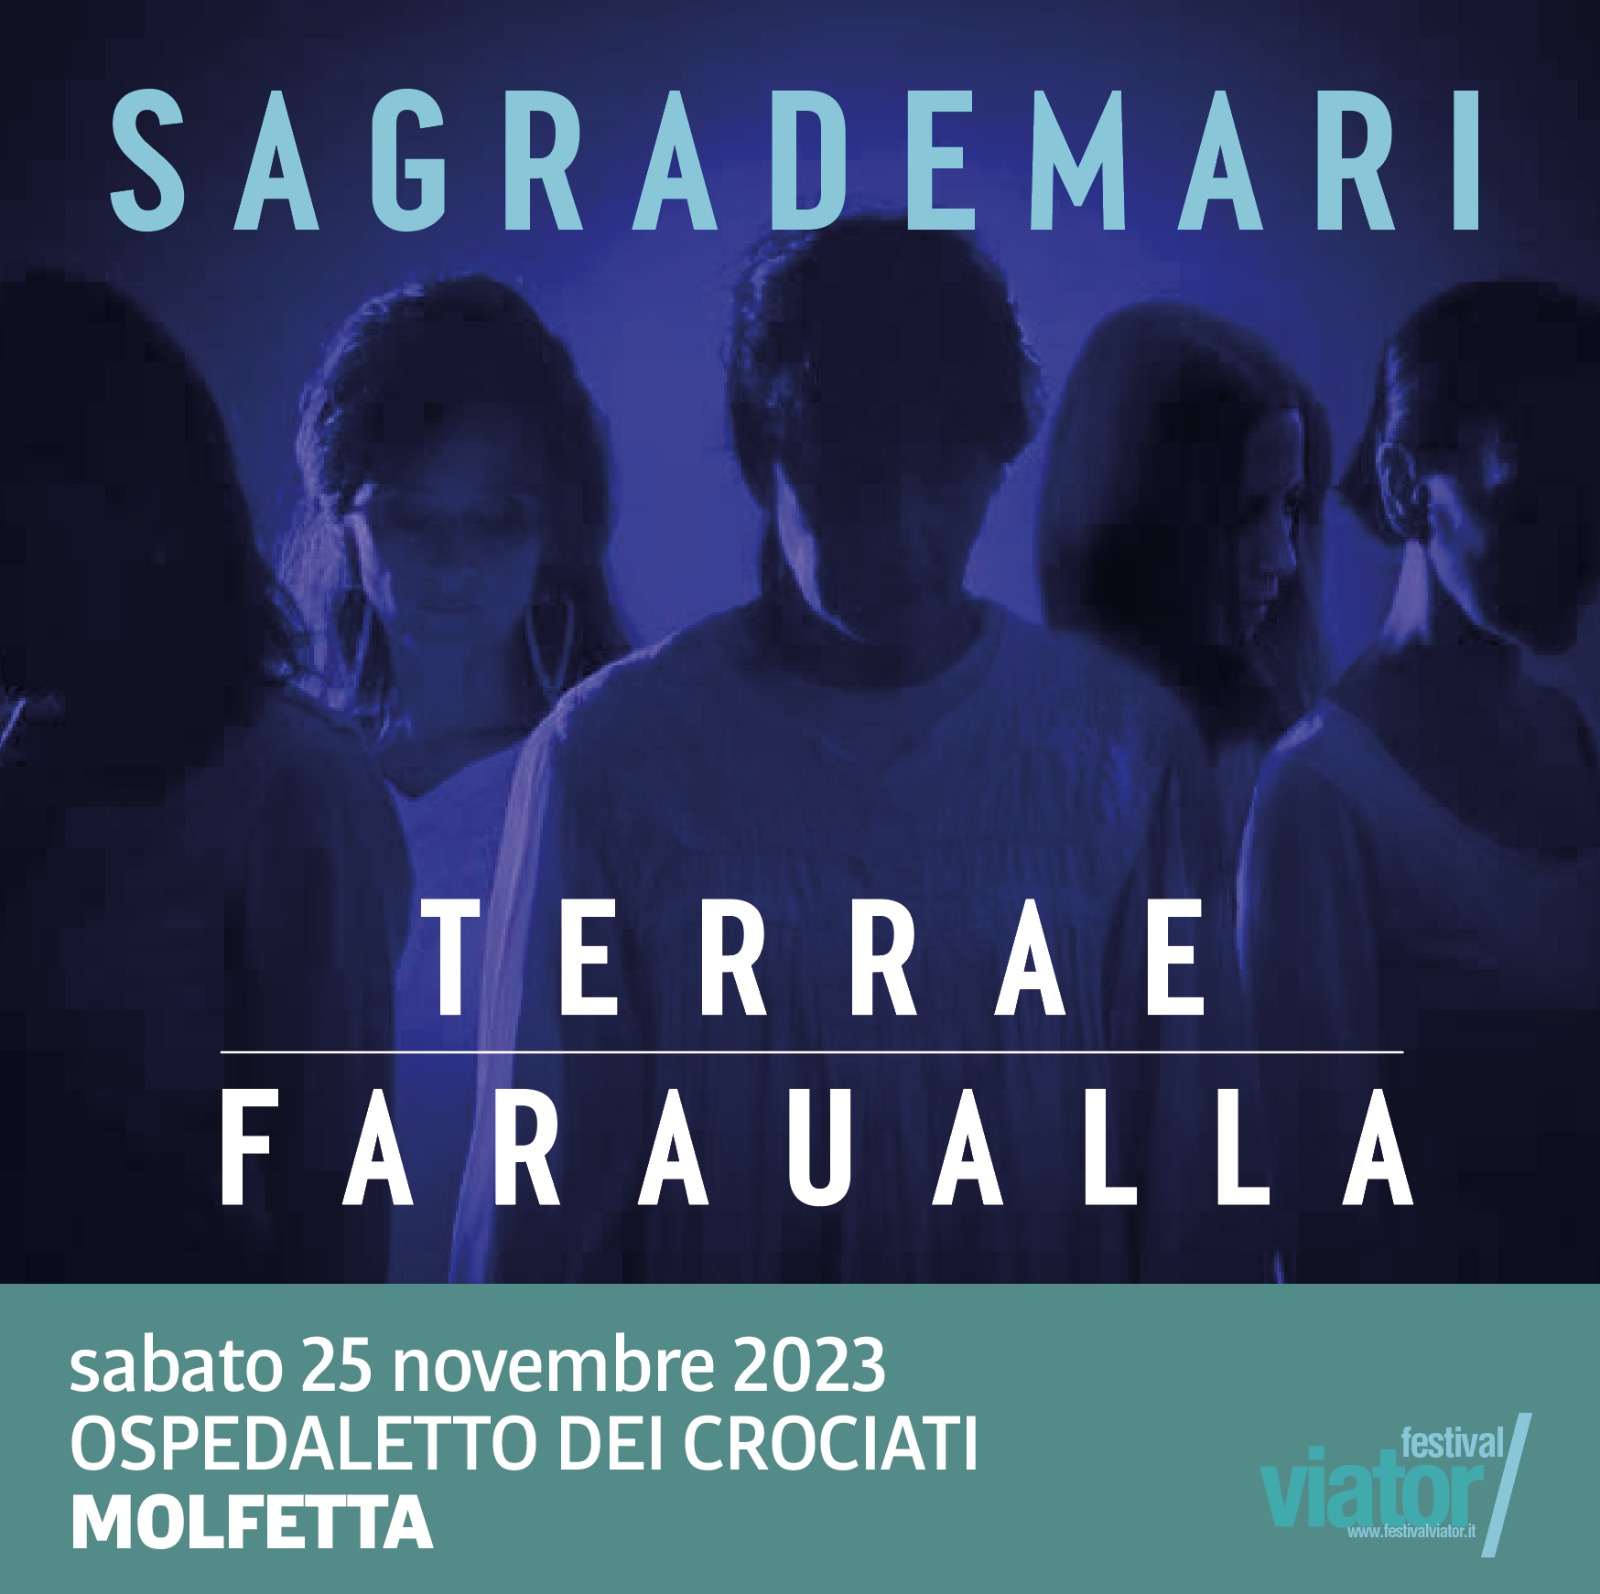 Concerto 2023 - Faraualla in Sagrademari a Molfetta (BA)